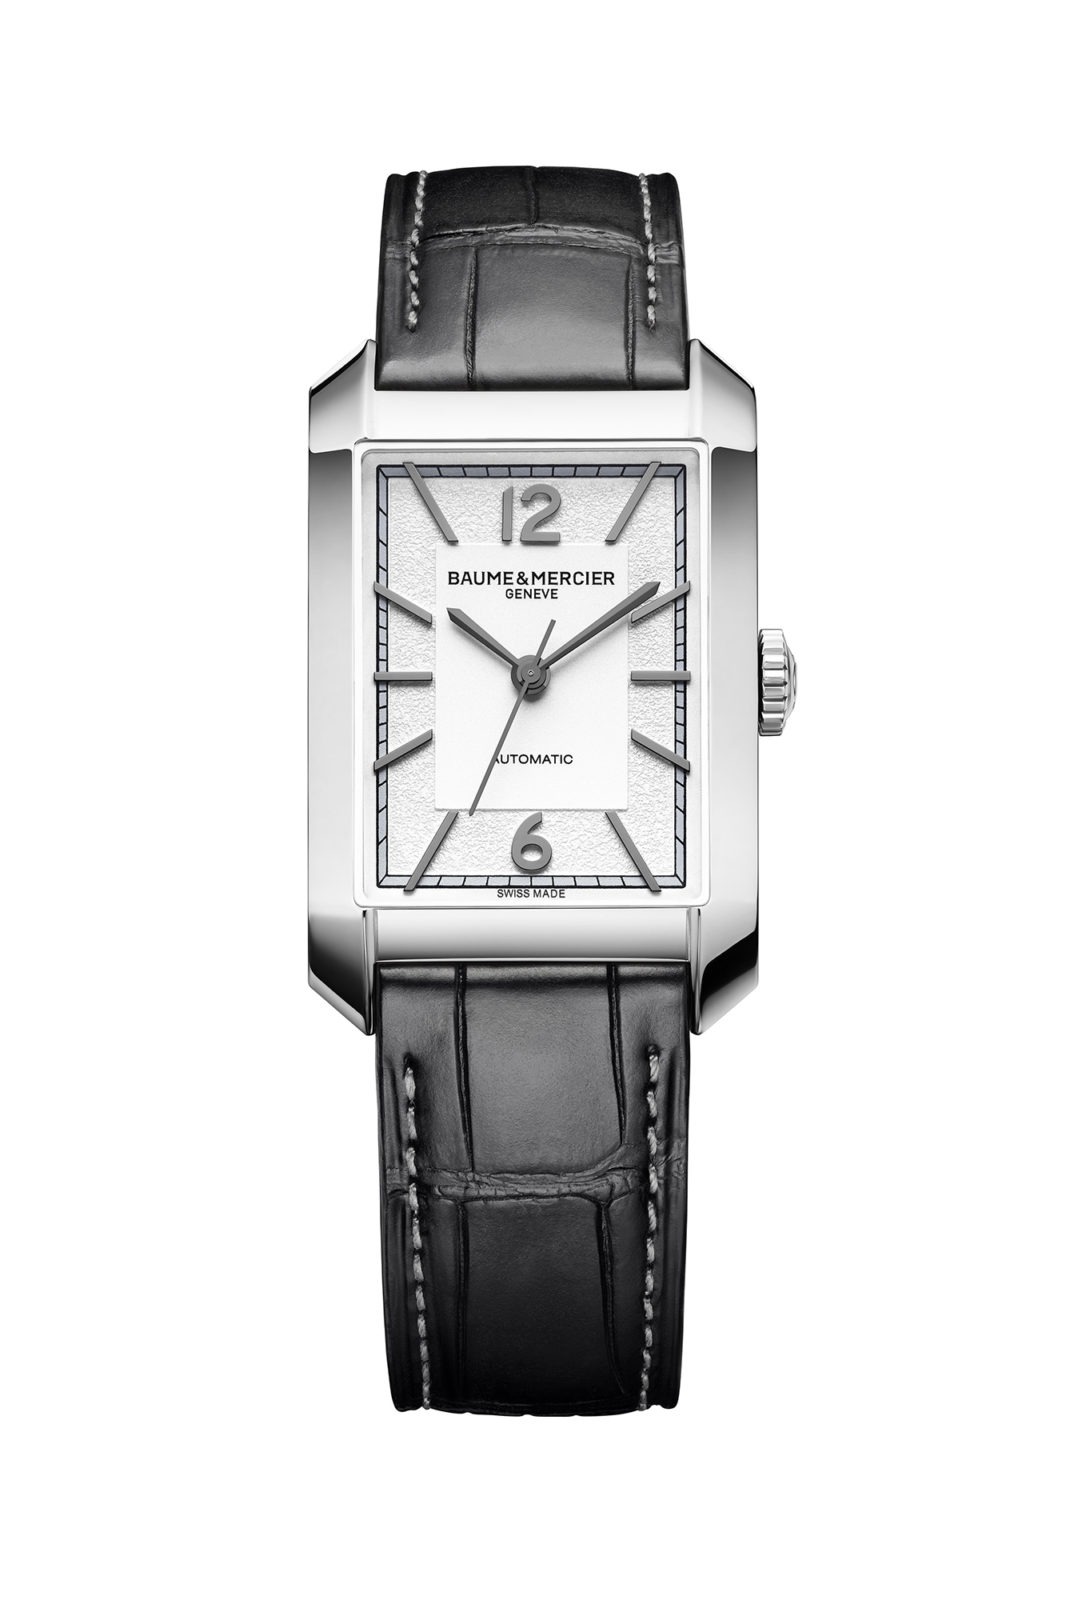 Baume & Mercier Watches & Wonders 2020 - Hampton Automatique